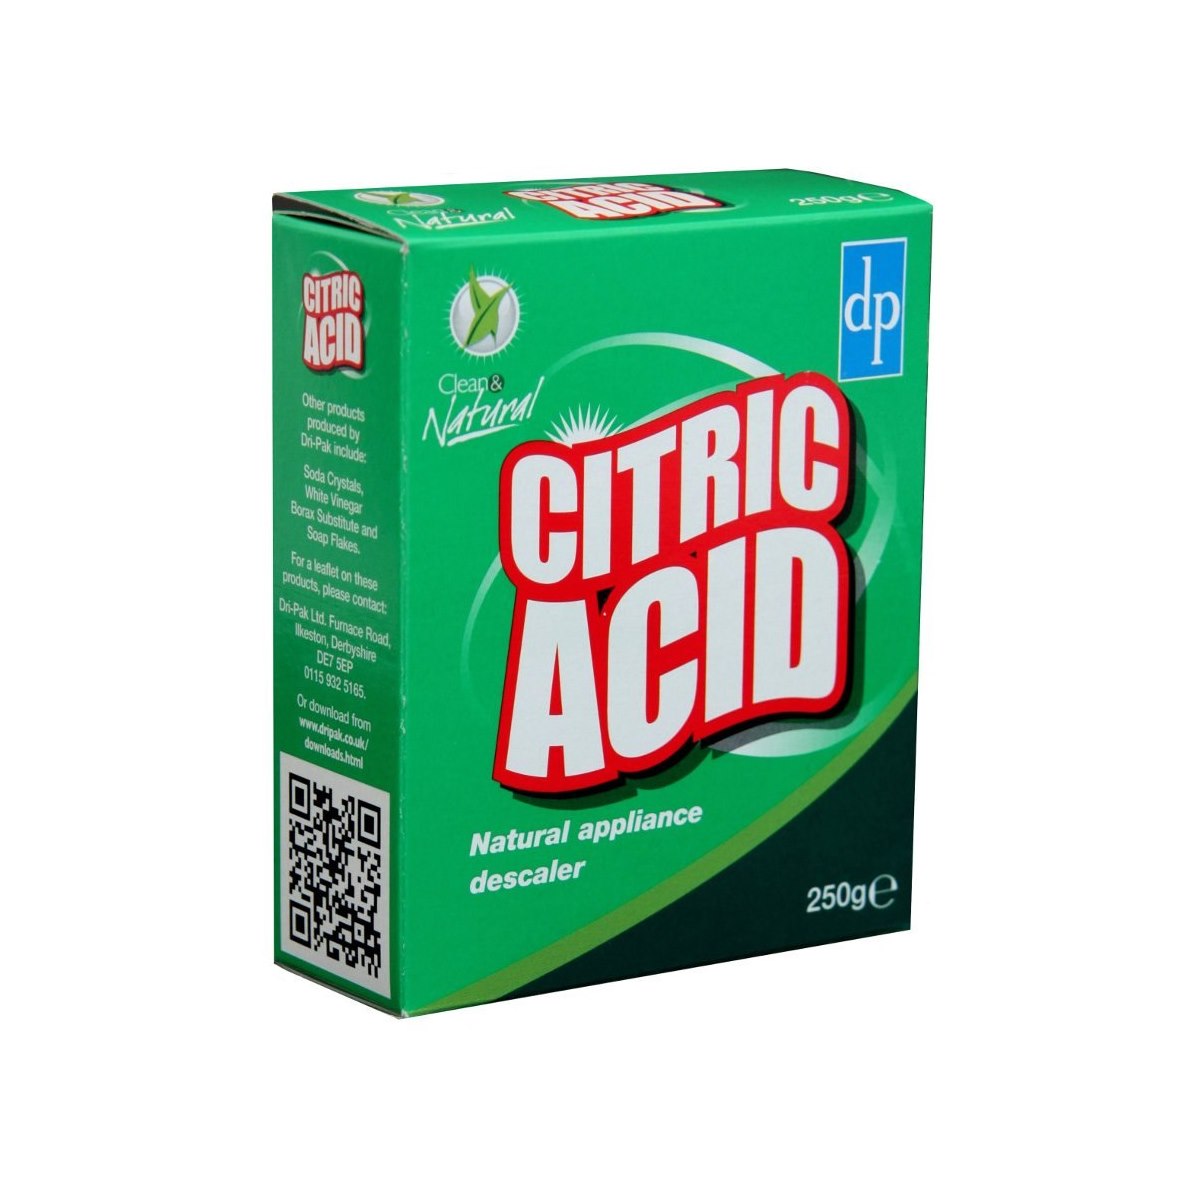 Dri Pak Clean and Natural Citric Acid 250g